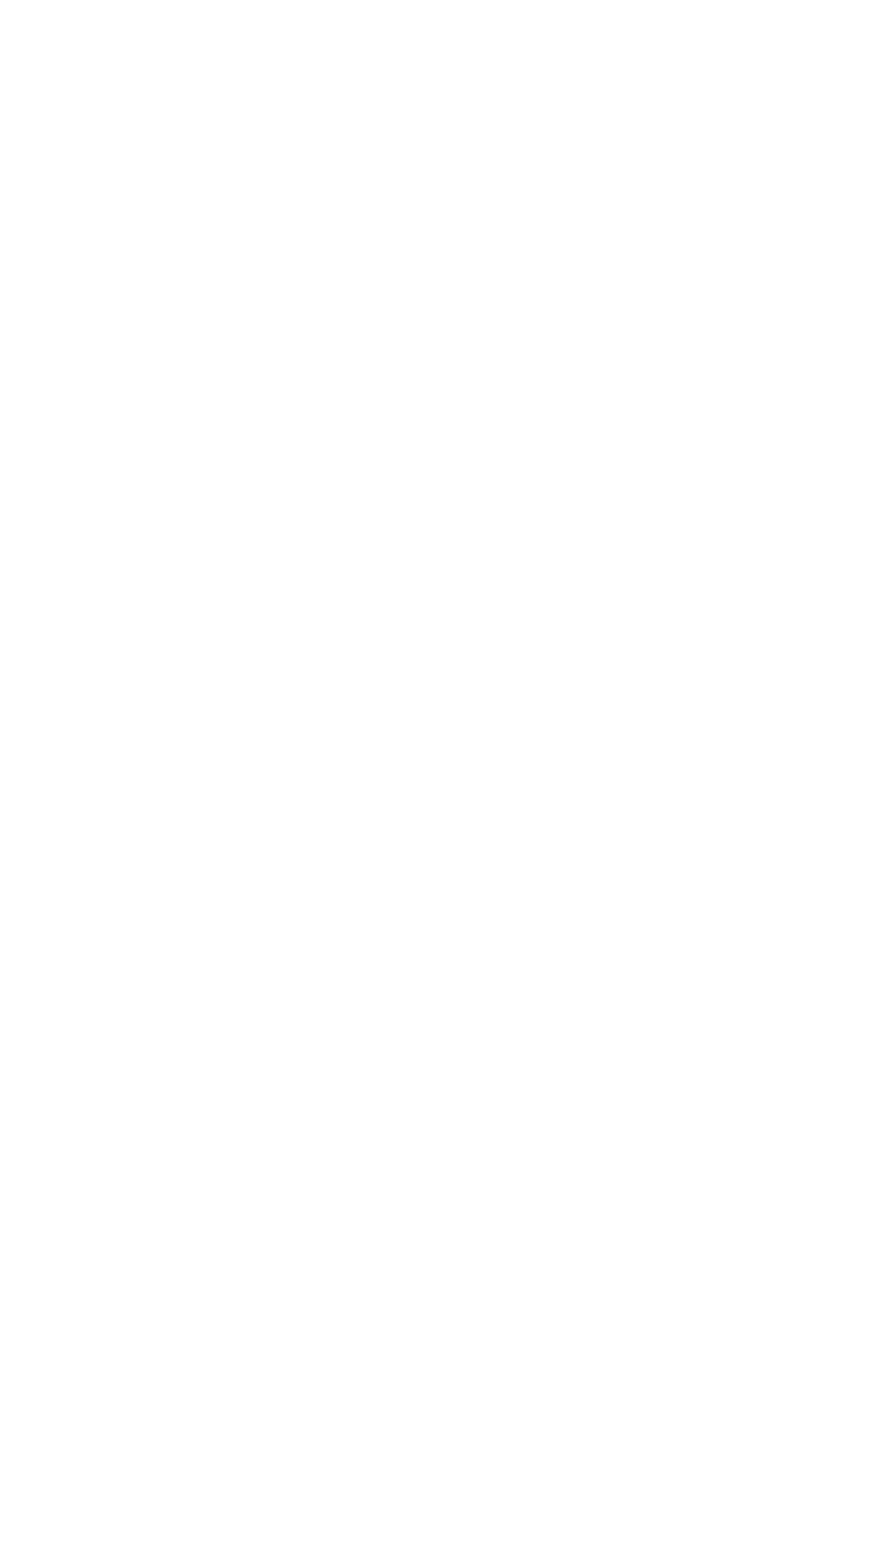 RLJ Lodging Trust logo for dark backgrounds (transparent PNG)